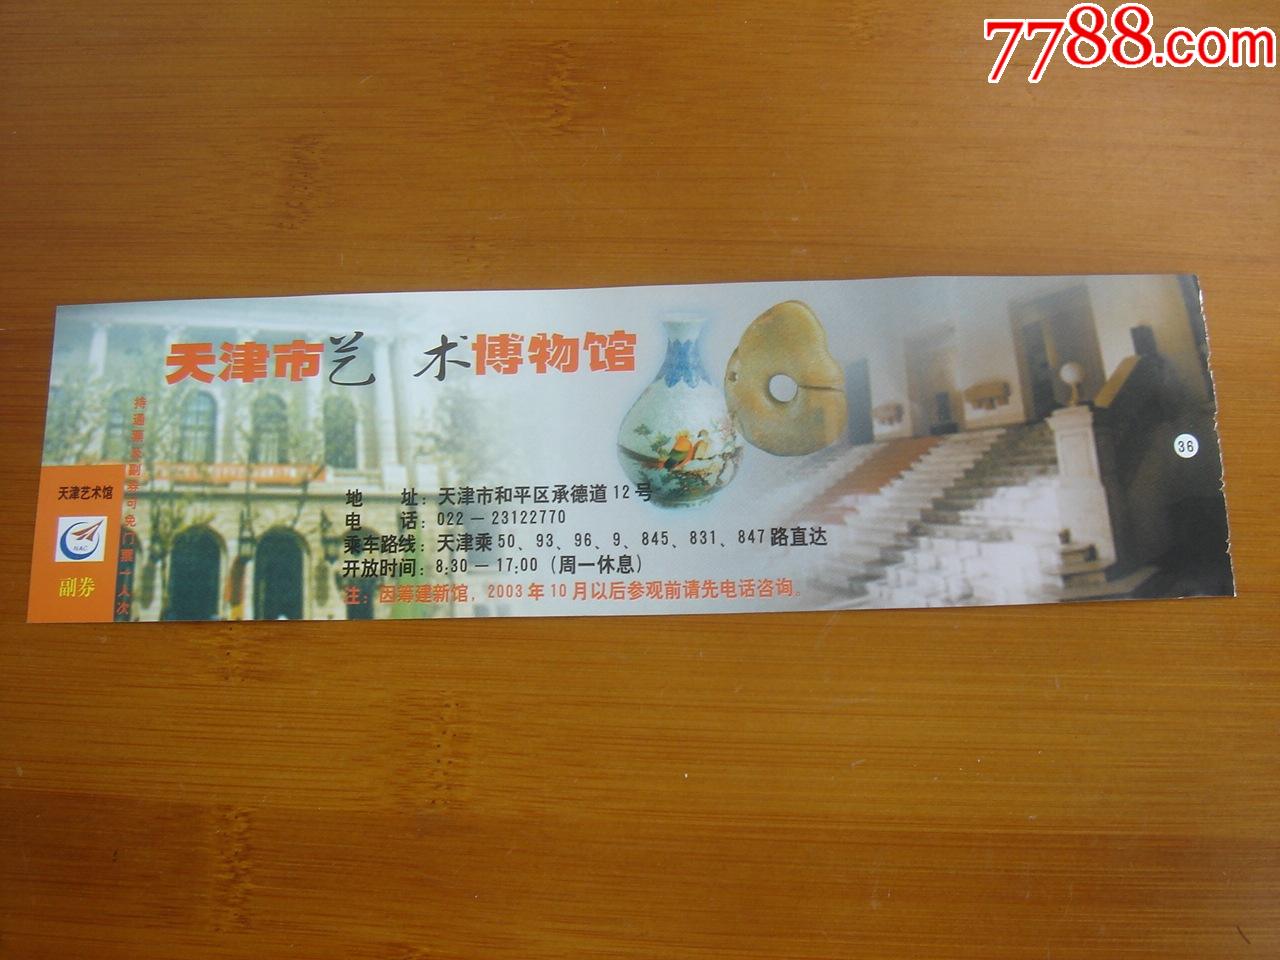 门票天津艺术博物馆按图发货003